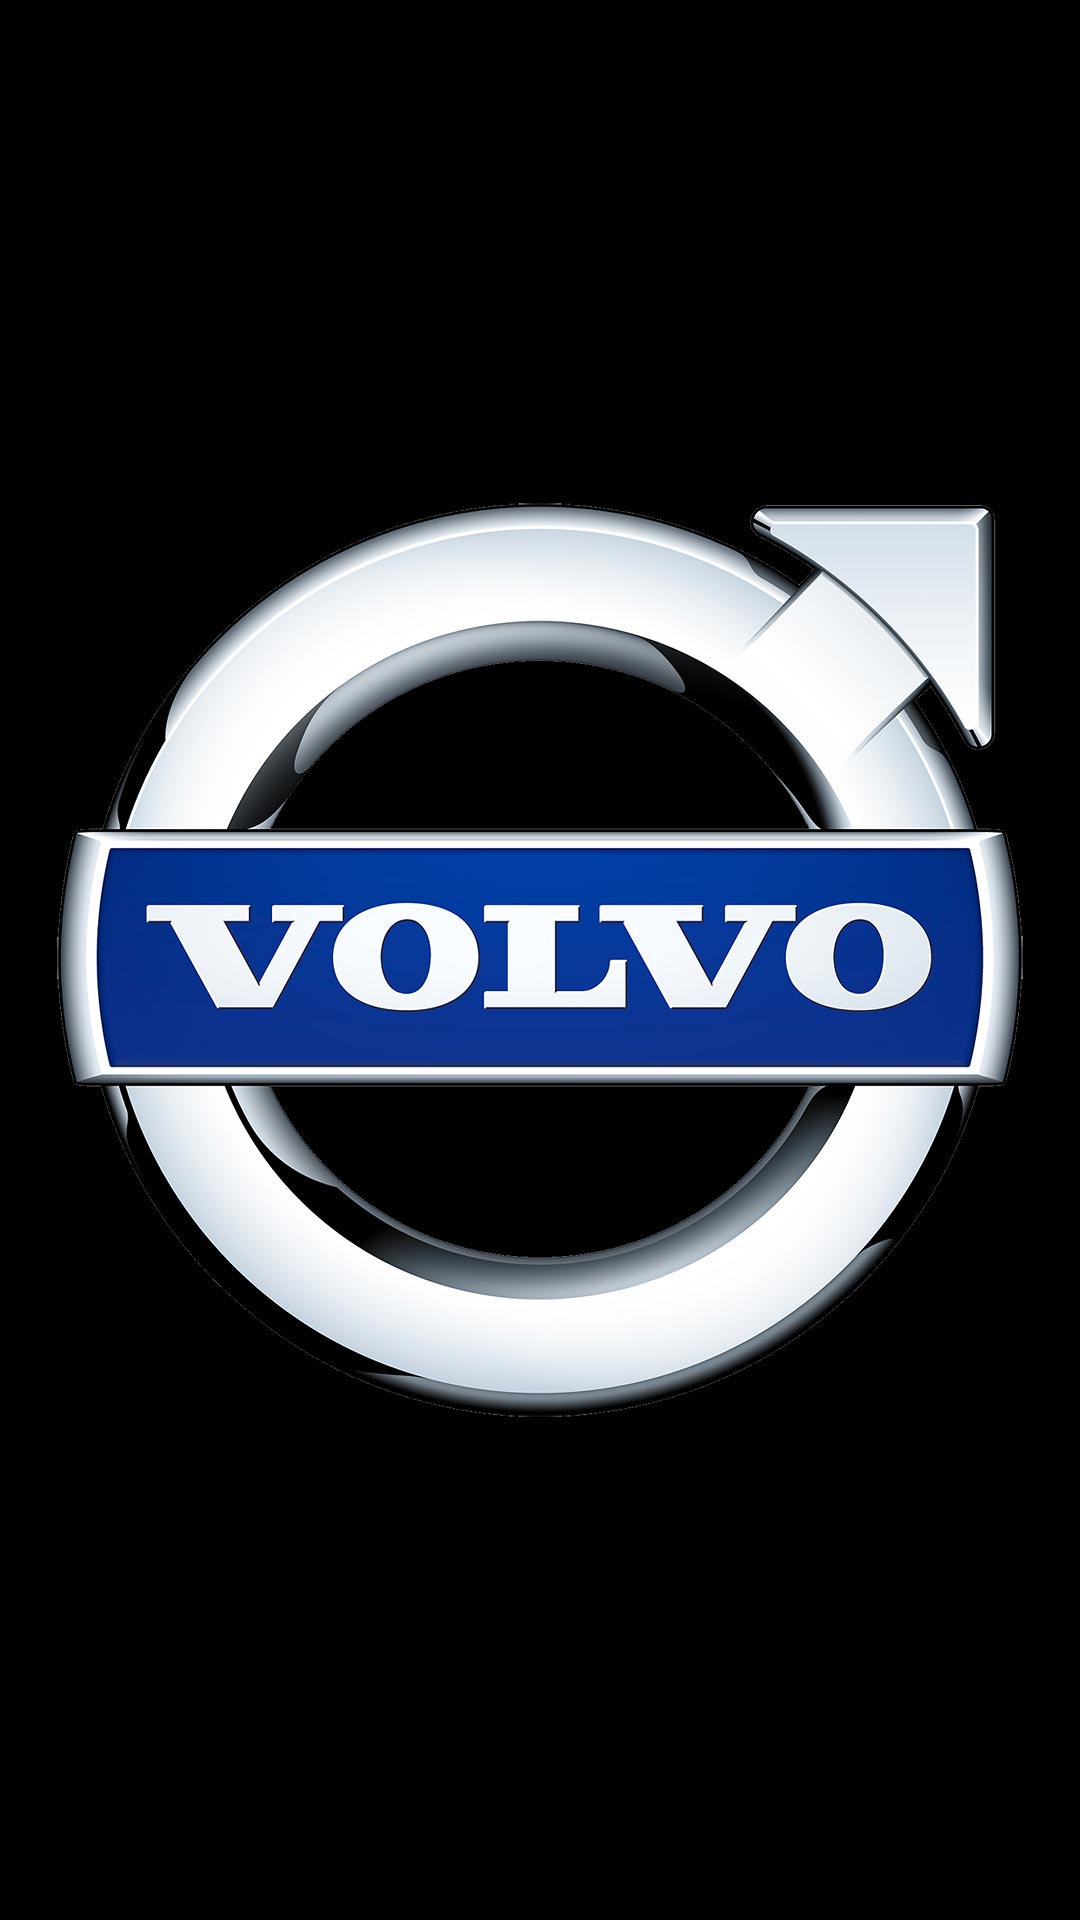 ボルボ Volvo ロゴ の無料待ち受け画像 スマホ壁紙 Iphone Android 1 待ち受けparadise